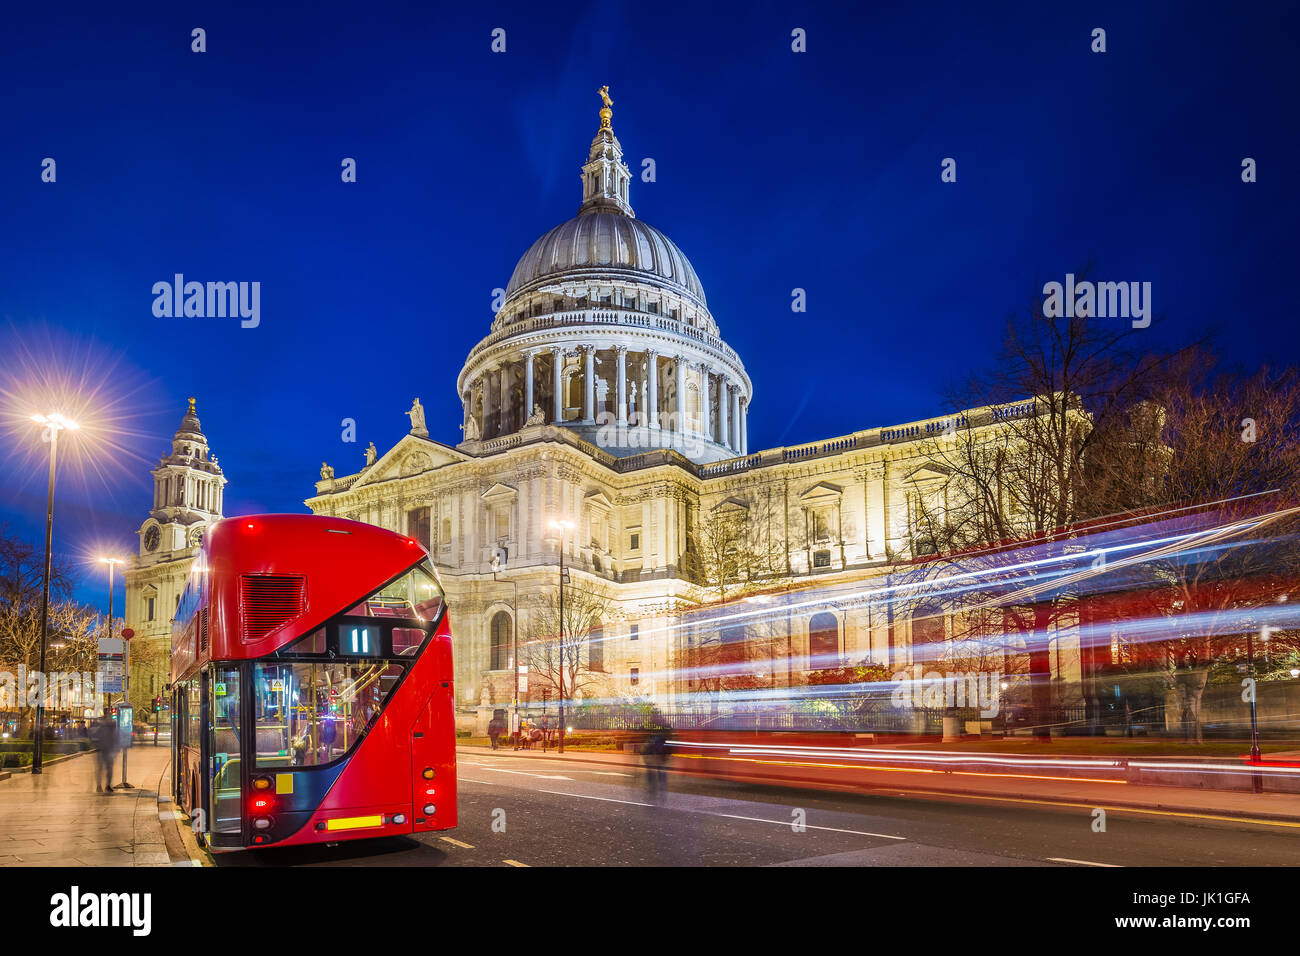 London, England - schönen Saint-Paul-Kathedrale mit traditionellen roten Doppeldecker-Bus in der Nacht mit Bussen und Autos vorbei Stockfoto